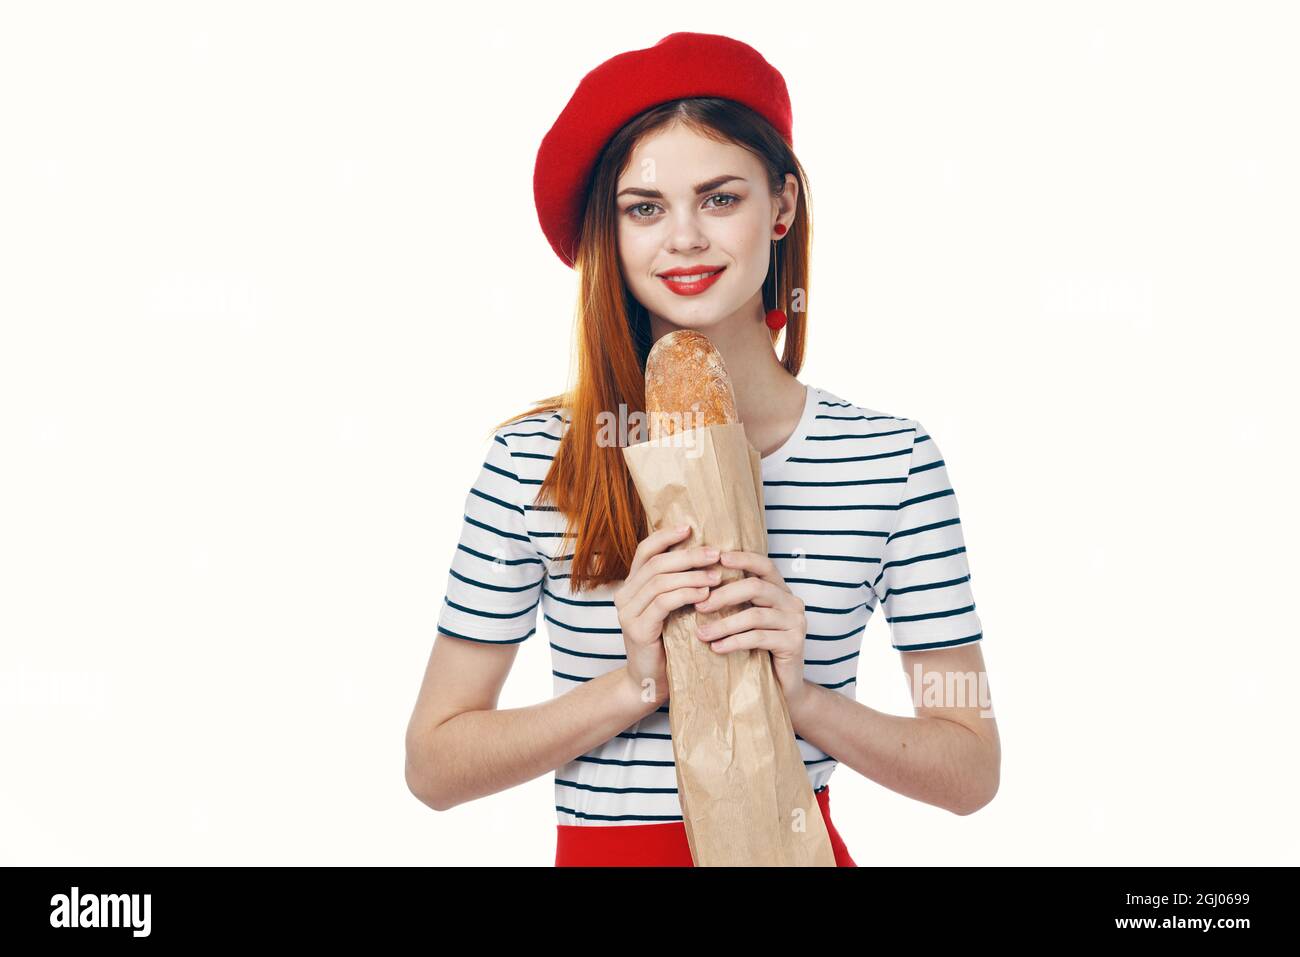 Donna in un cappello rosso con una pagnotta francese in mano uno snack  Gourmet lifestyle Foto stock - Alamy